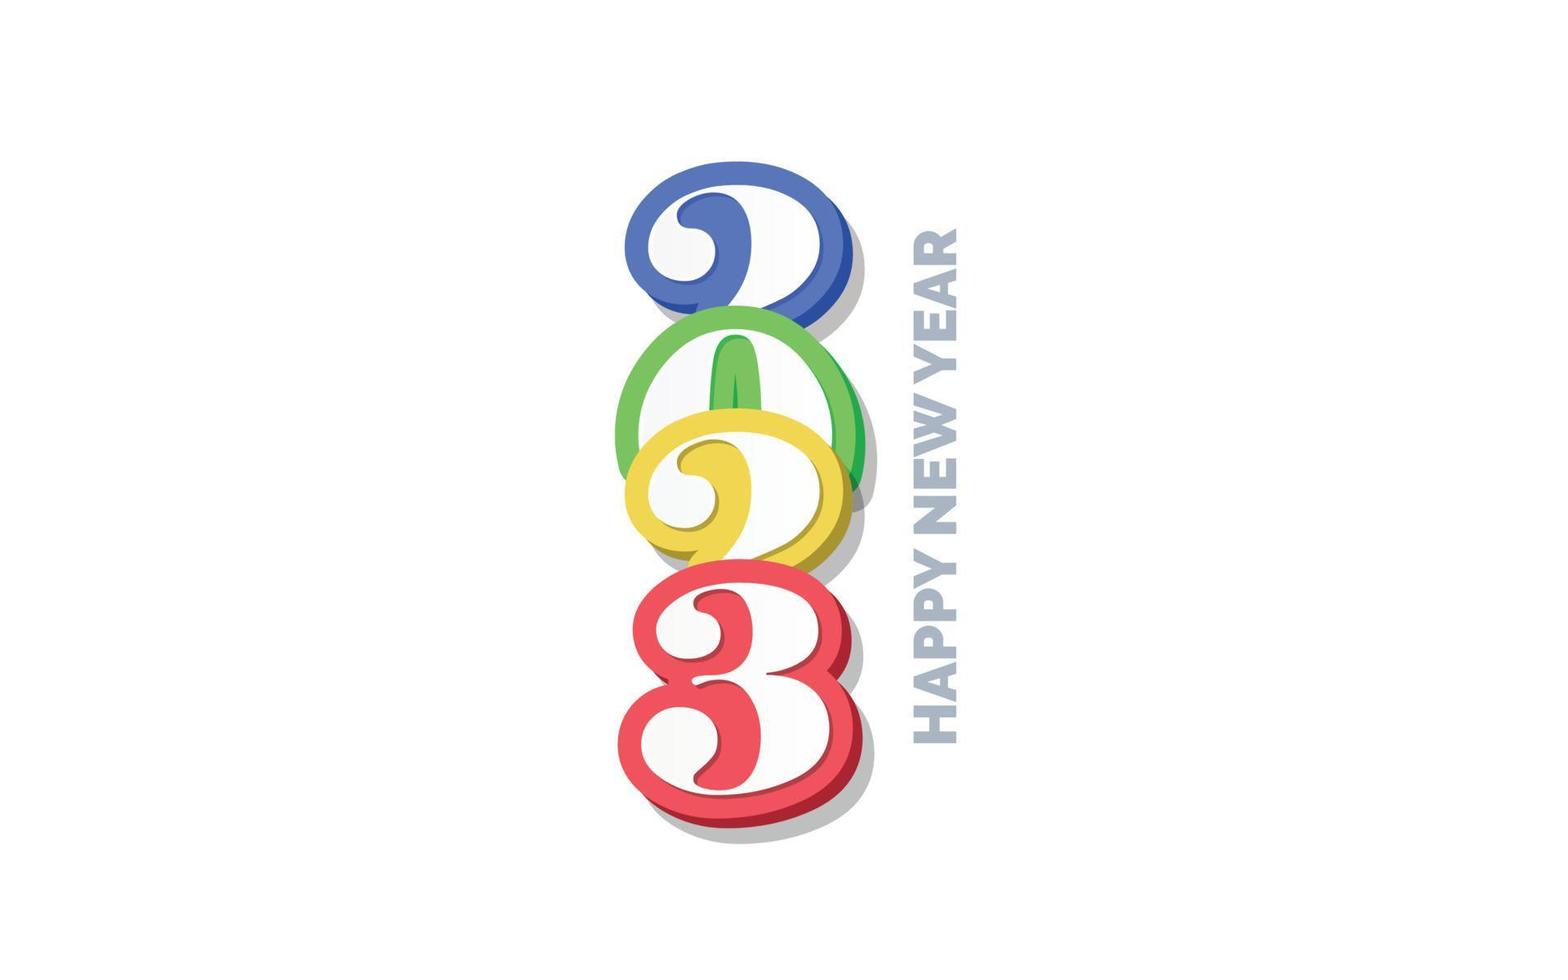 Diseño de logotipo 3d feliz año nuevo 2023 vector